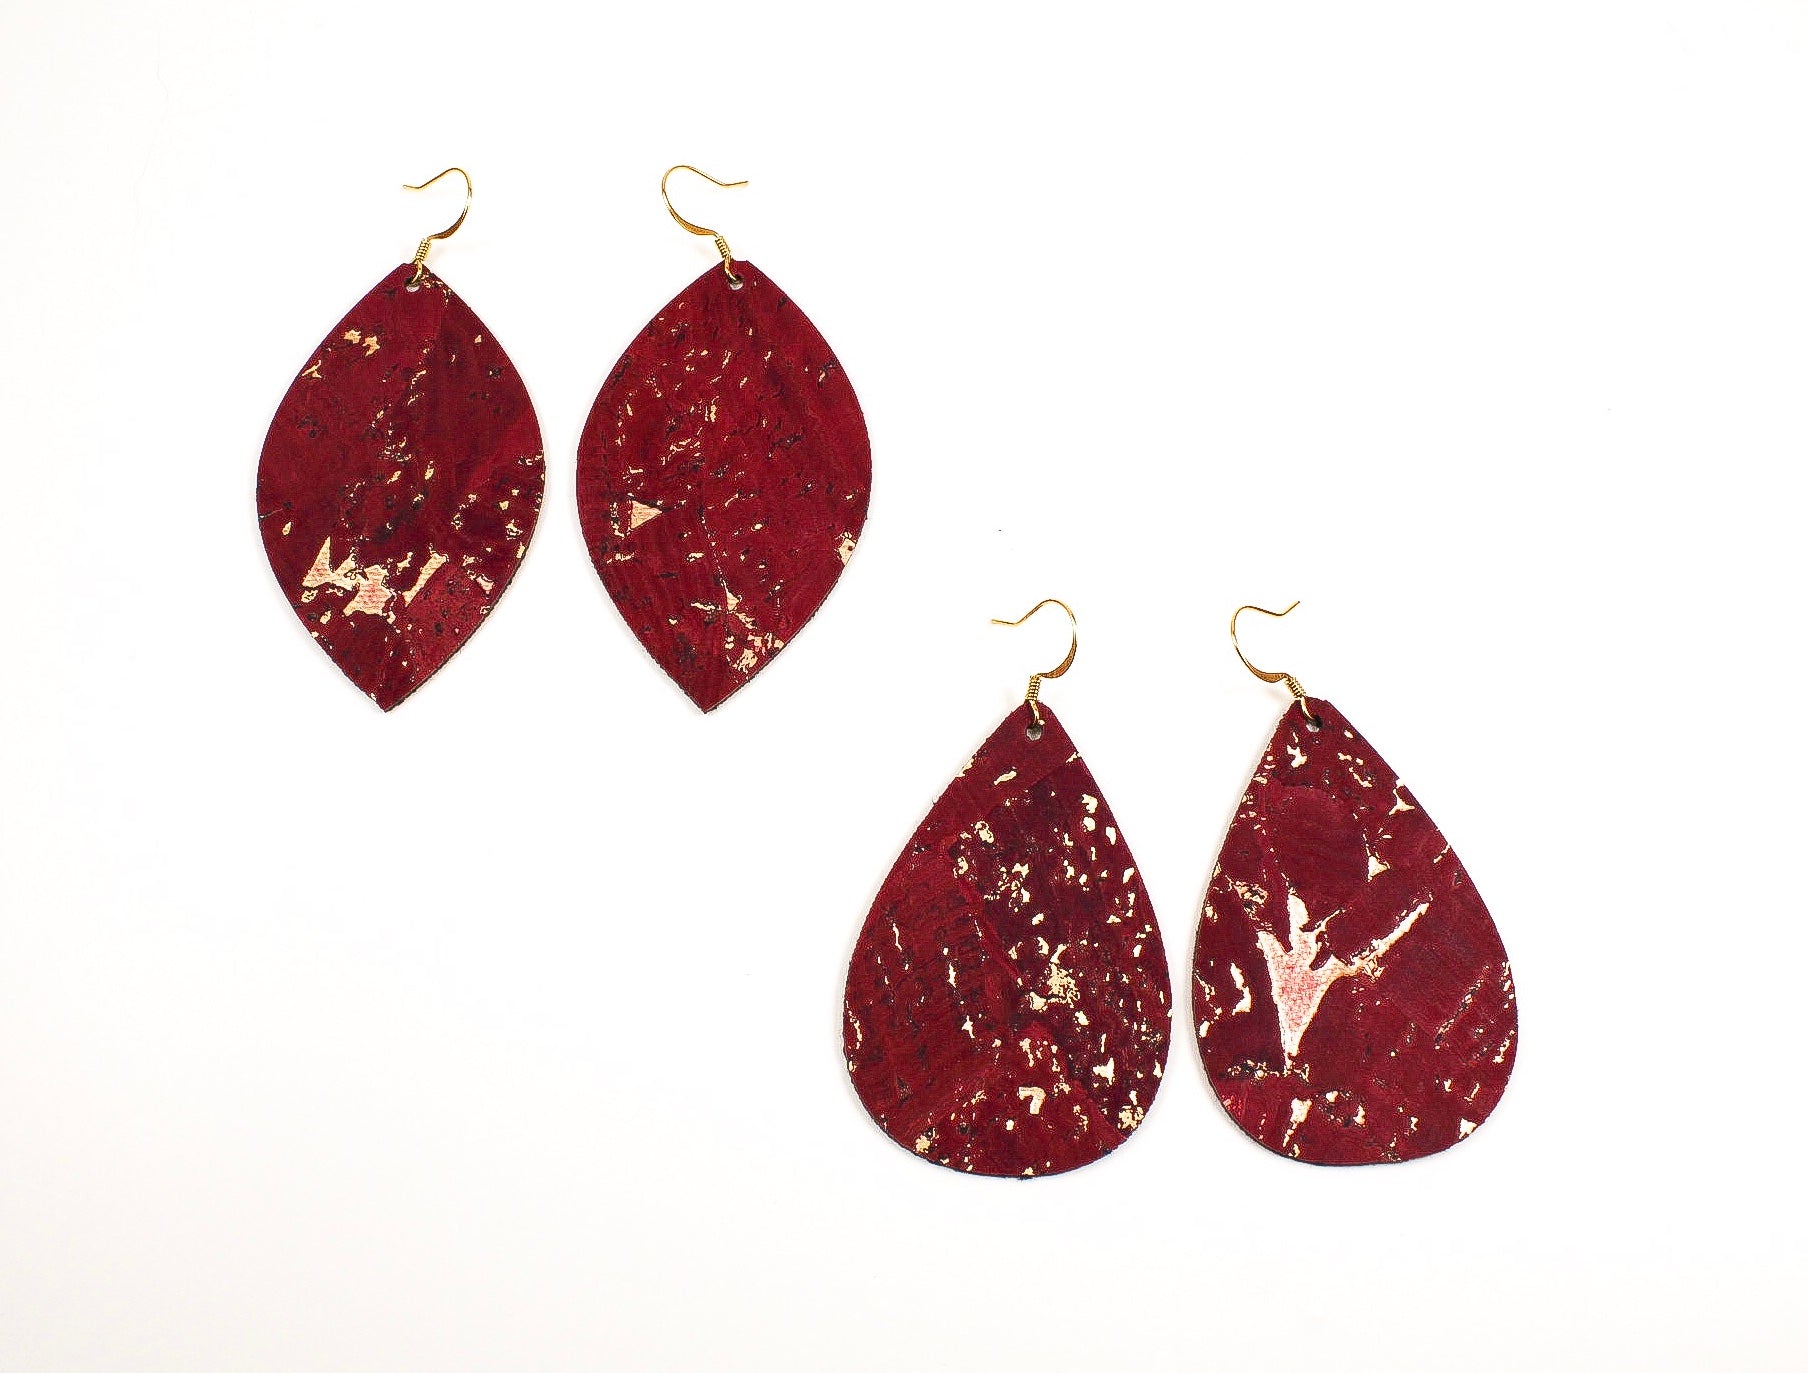 Red Wine Cork Teardrop or Leaf Earrings with Gold Flecks